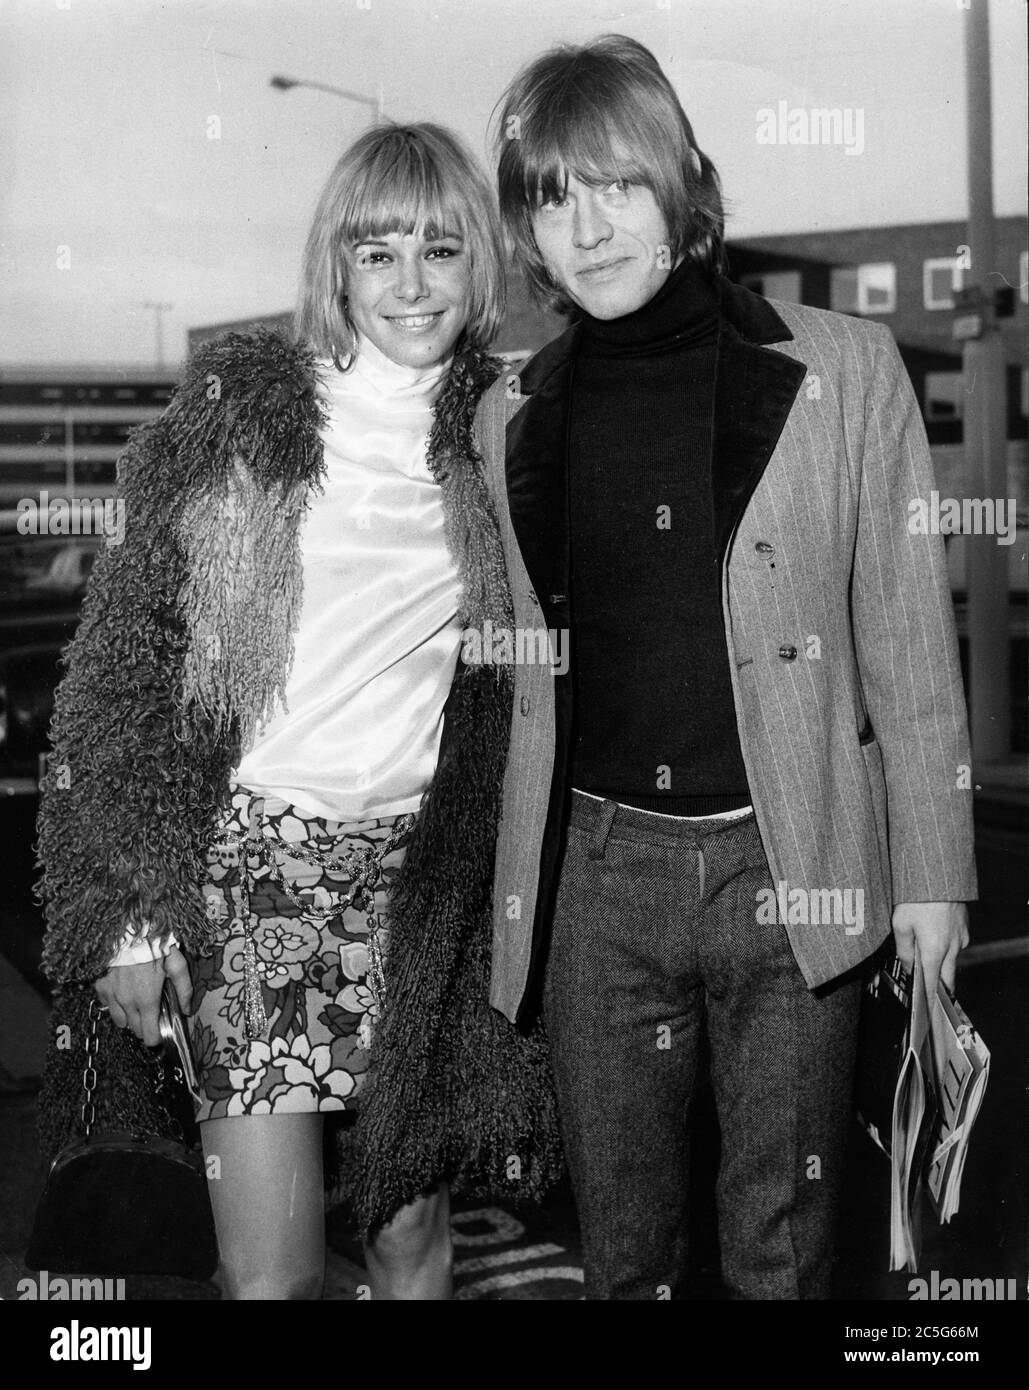 3 dicembre 1966 - Londra, Inghilterra, Regno Unito - il chitarrista di Rolling Stones BRIAN JONES con la fidanzata ANITA PALLENBERG all'aeroporto di Heathrow. (Credit Image: © Keystone Press Agency/Keystone USA via ZUMAPRESS.com) Foto Stock